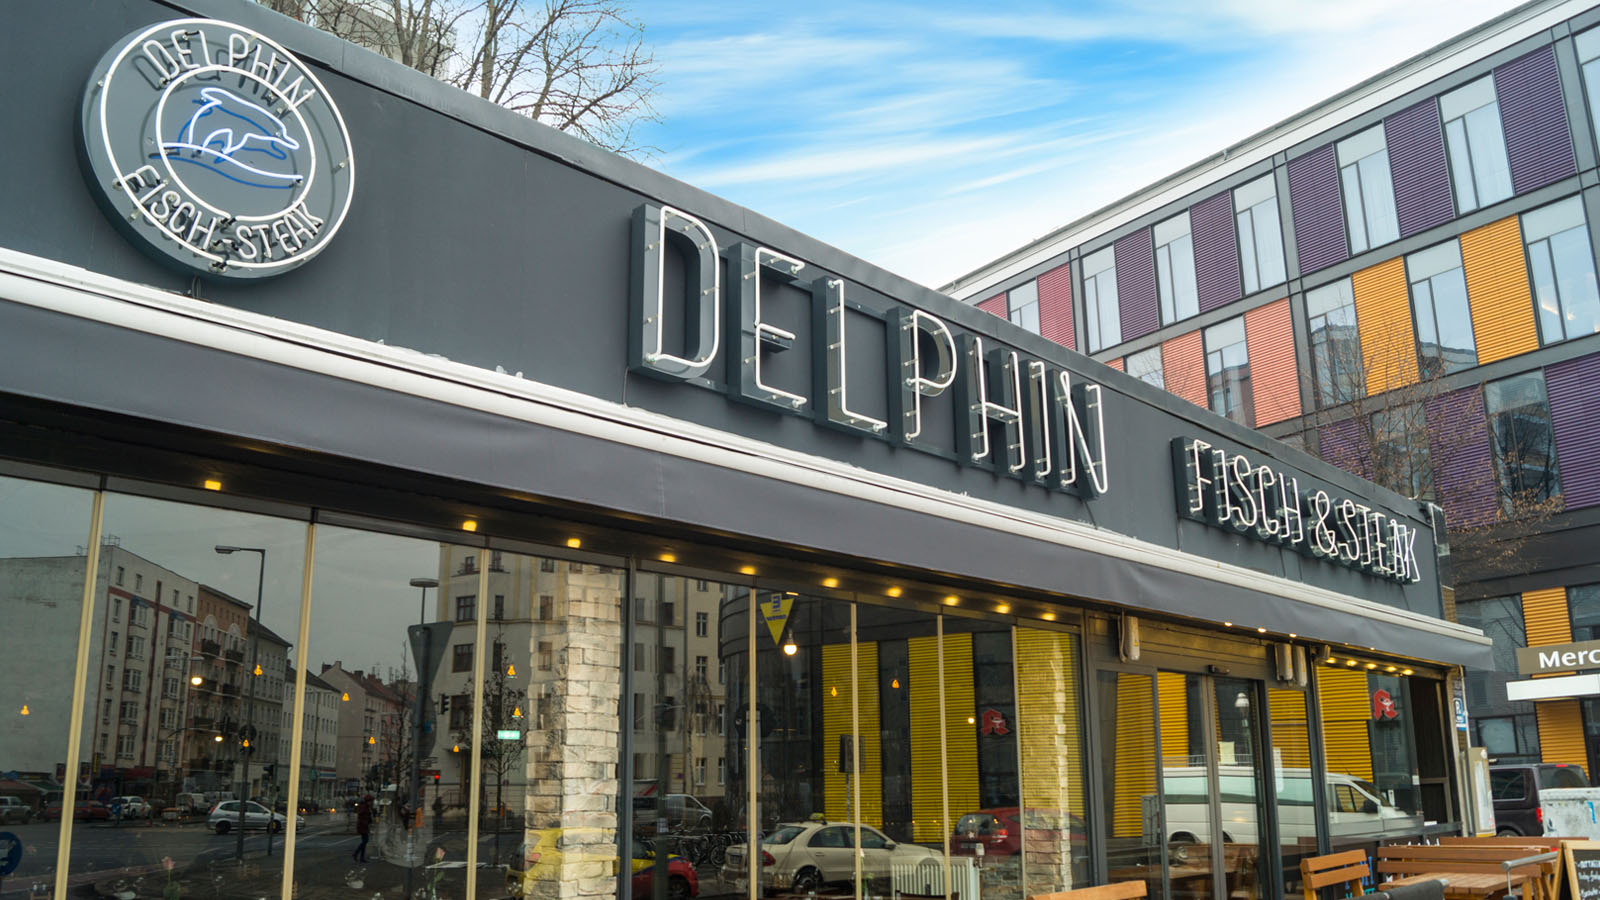 delphin-berlin-restaurant-fisch-steak-slider1600x900